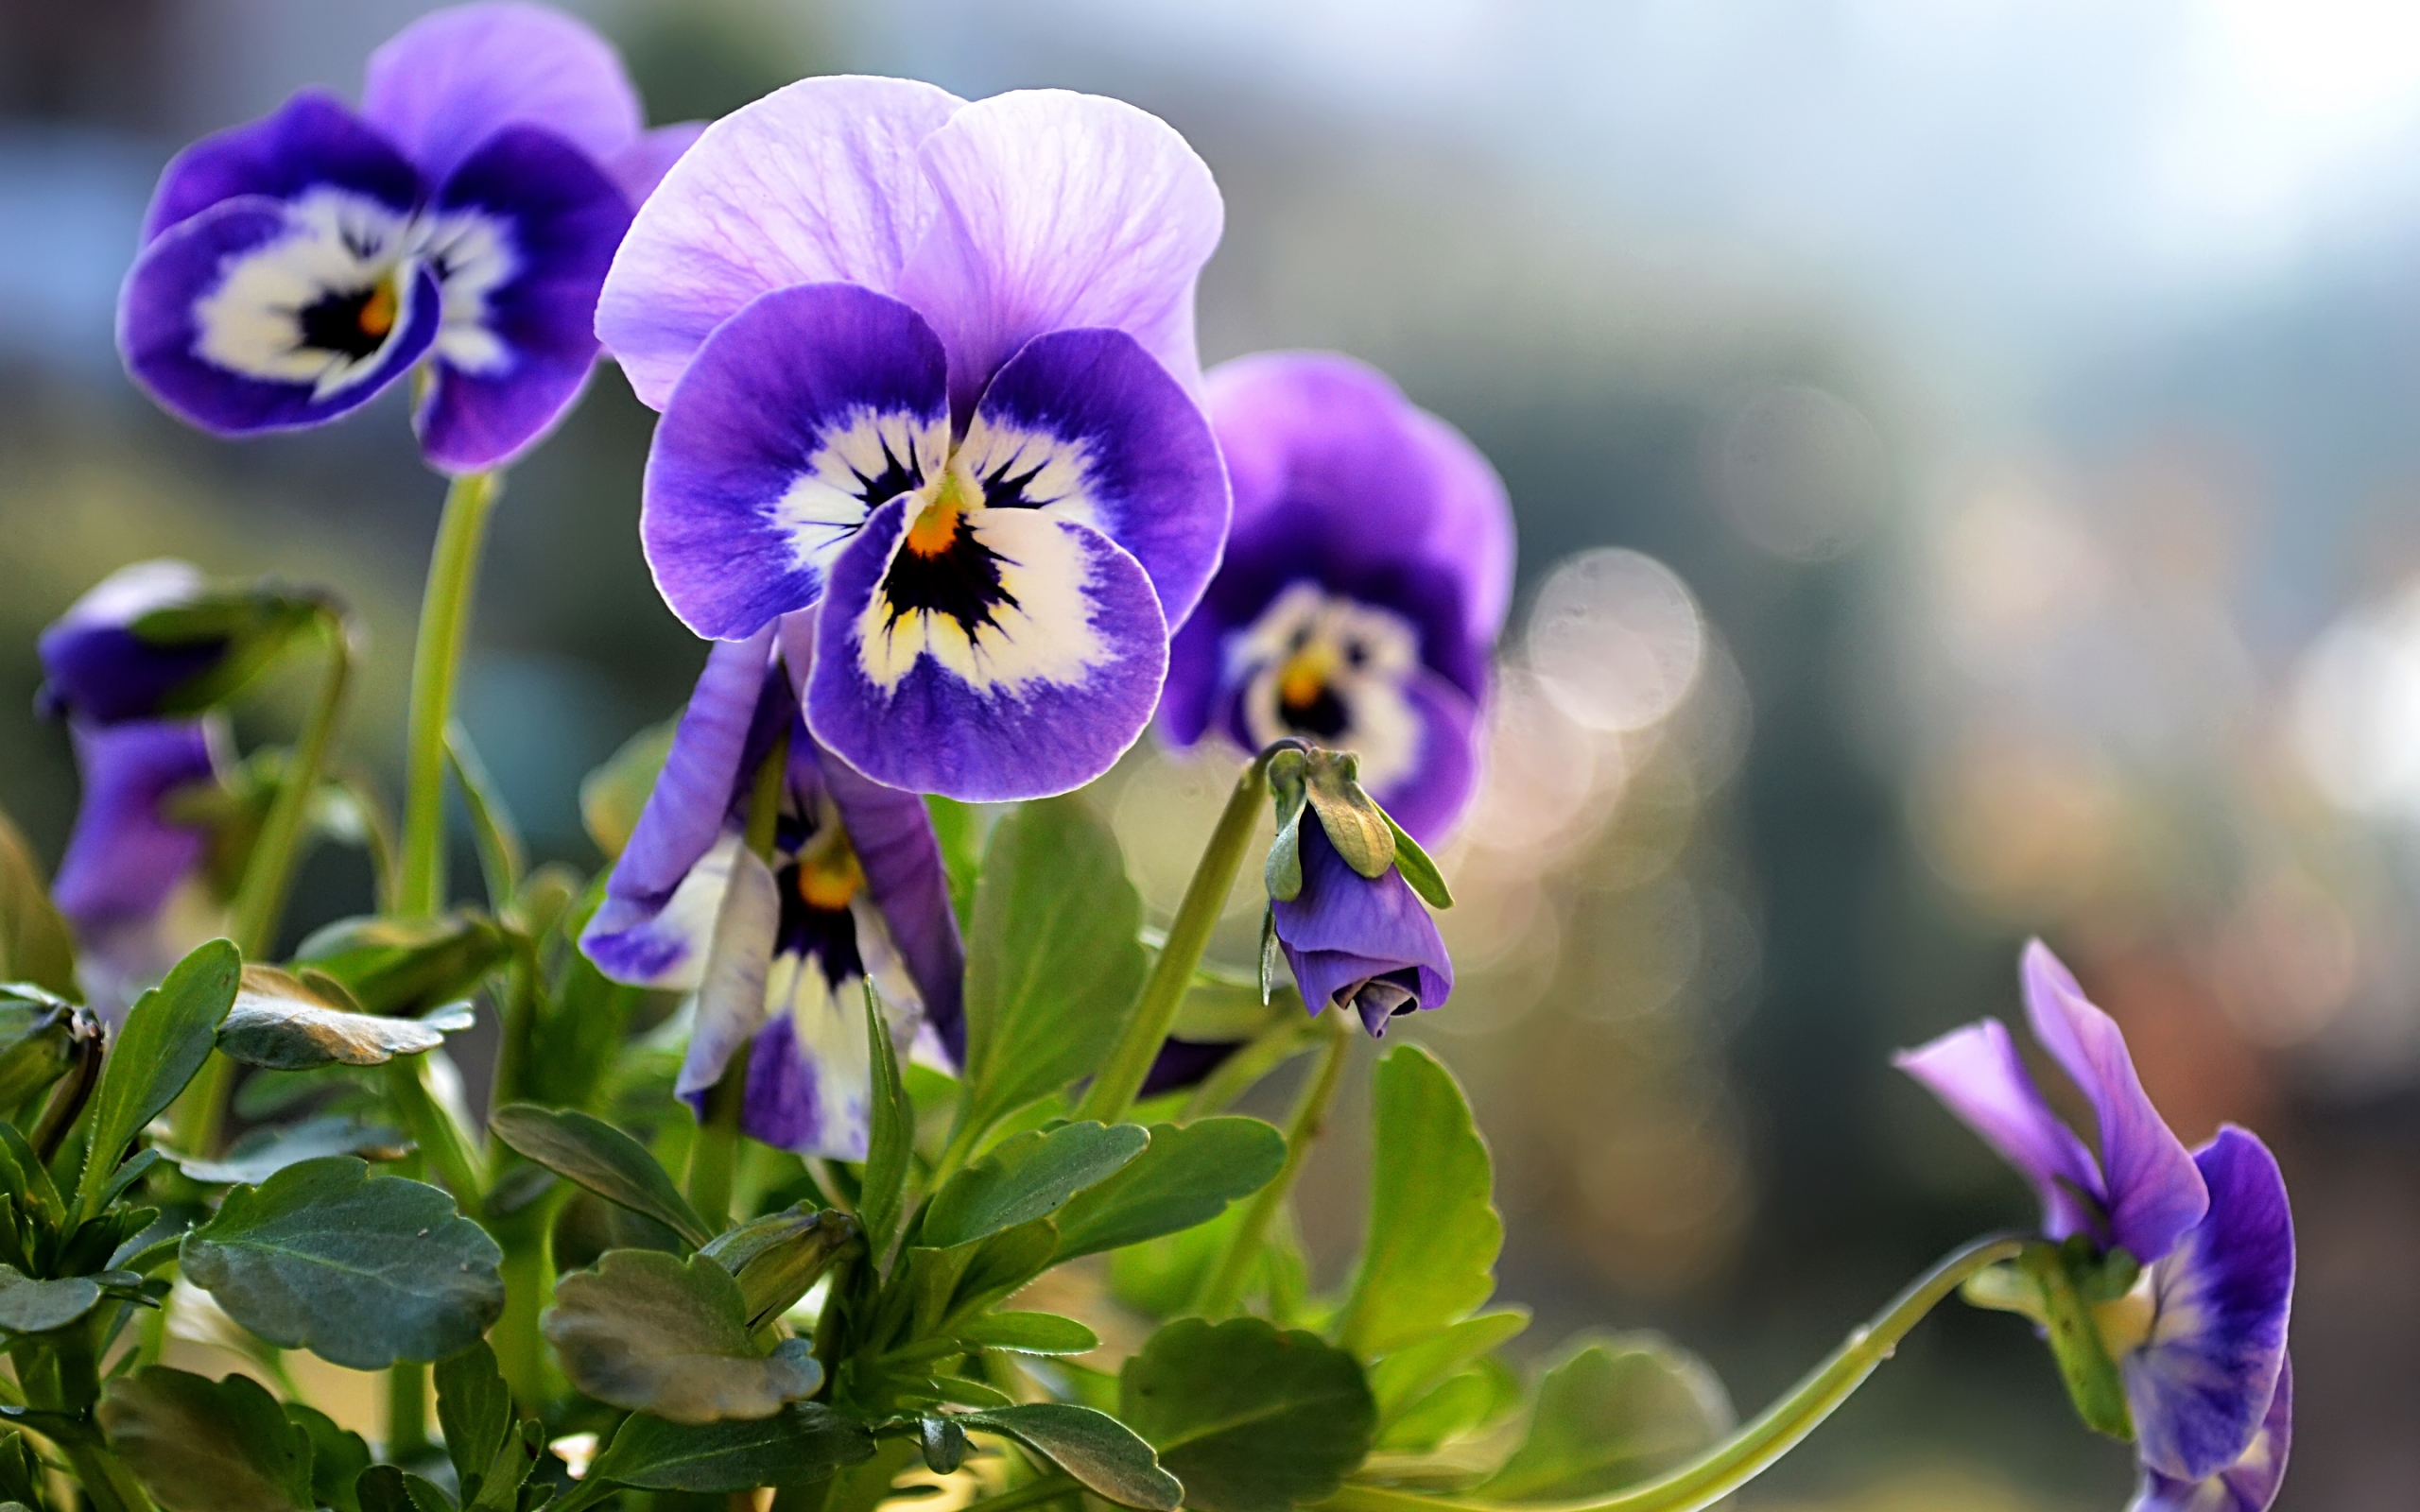 анютины глазки, цветы фиолетовые, красивые обои, Pansies, flowers violet, beautiful wallpaper